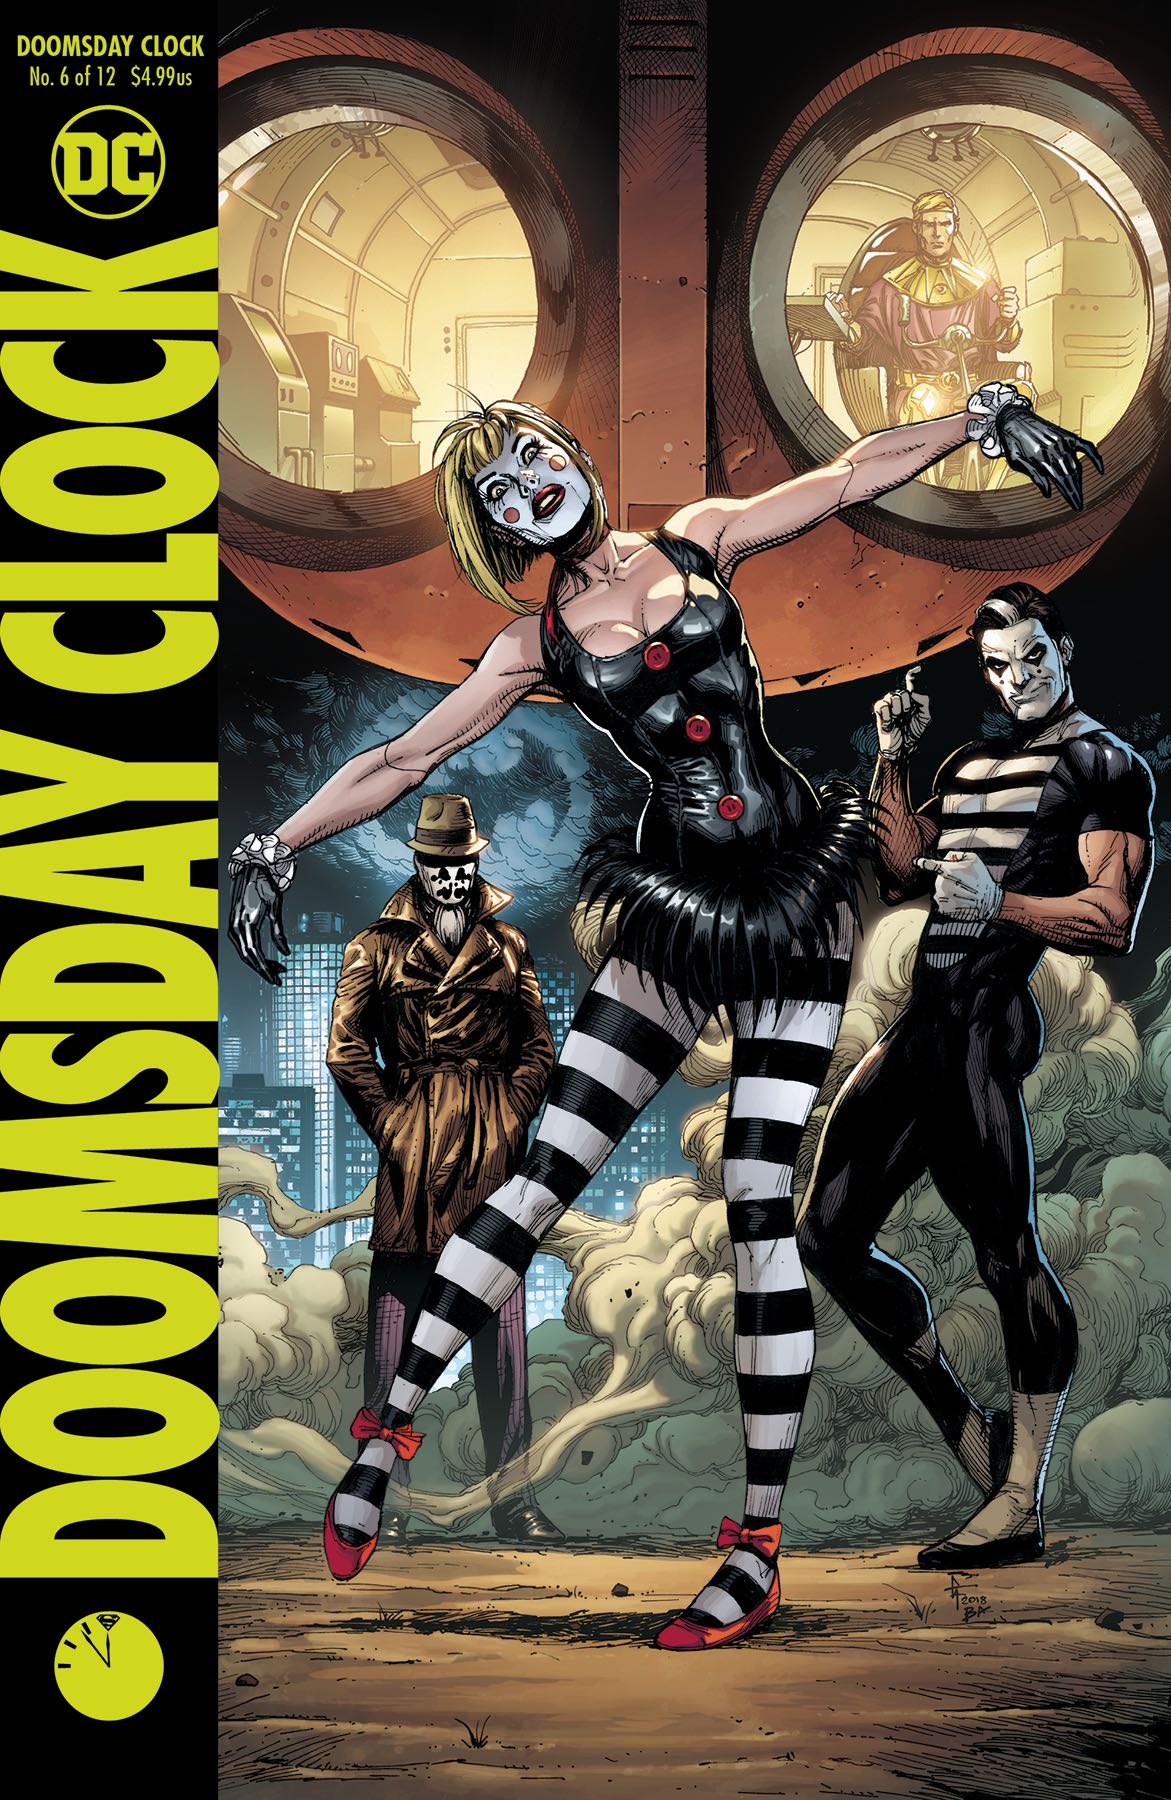 Doomsday Clock #6 (Variant Cover) | Fresh Comics